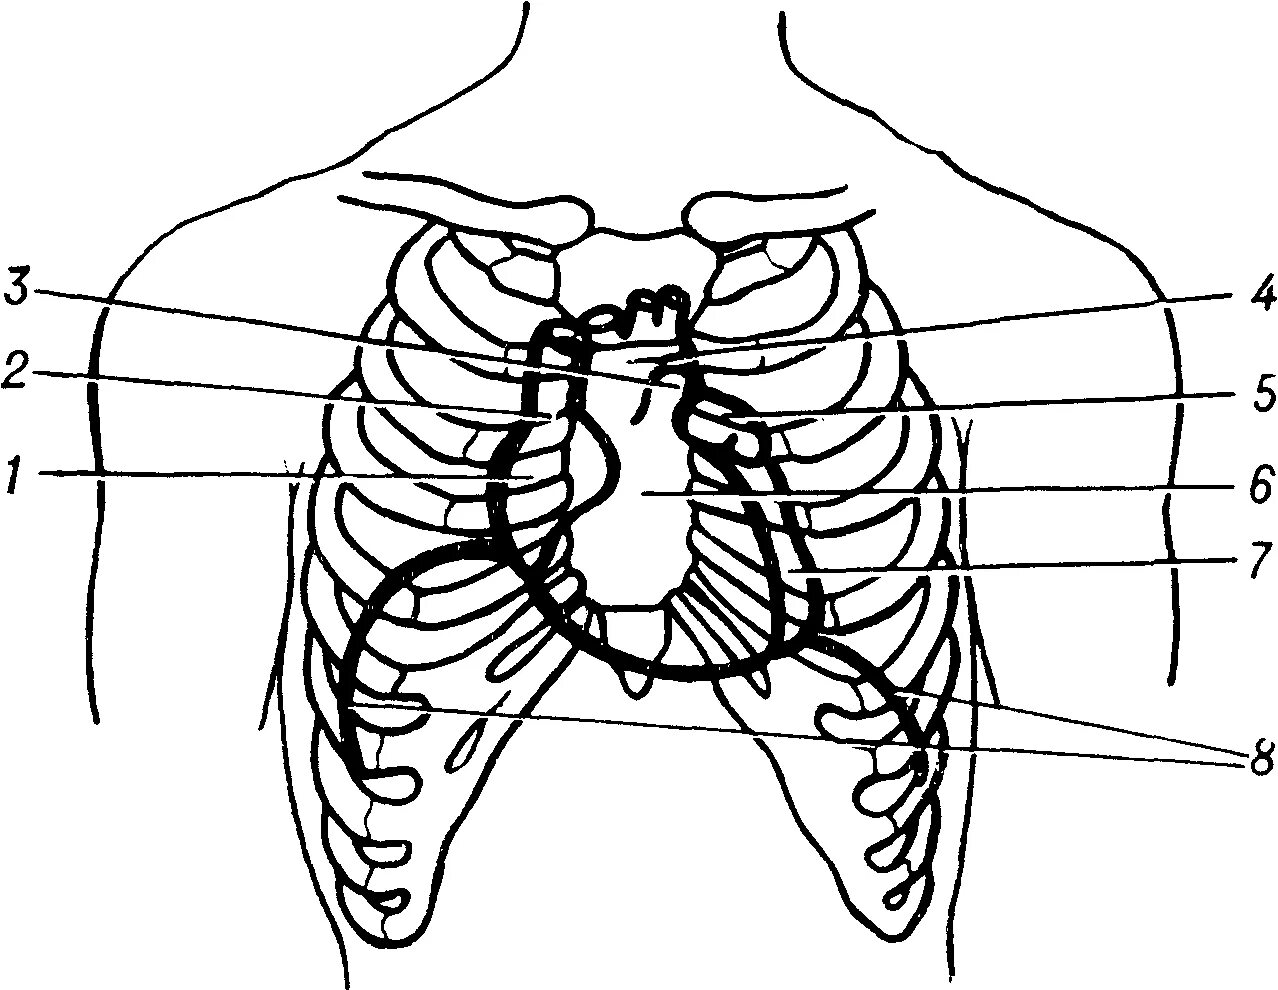 Топография сердца в грудной клетке. Топография сердца скелетотопия. Скелетотопия диафрагмы. Топография сердца границы.